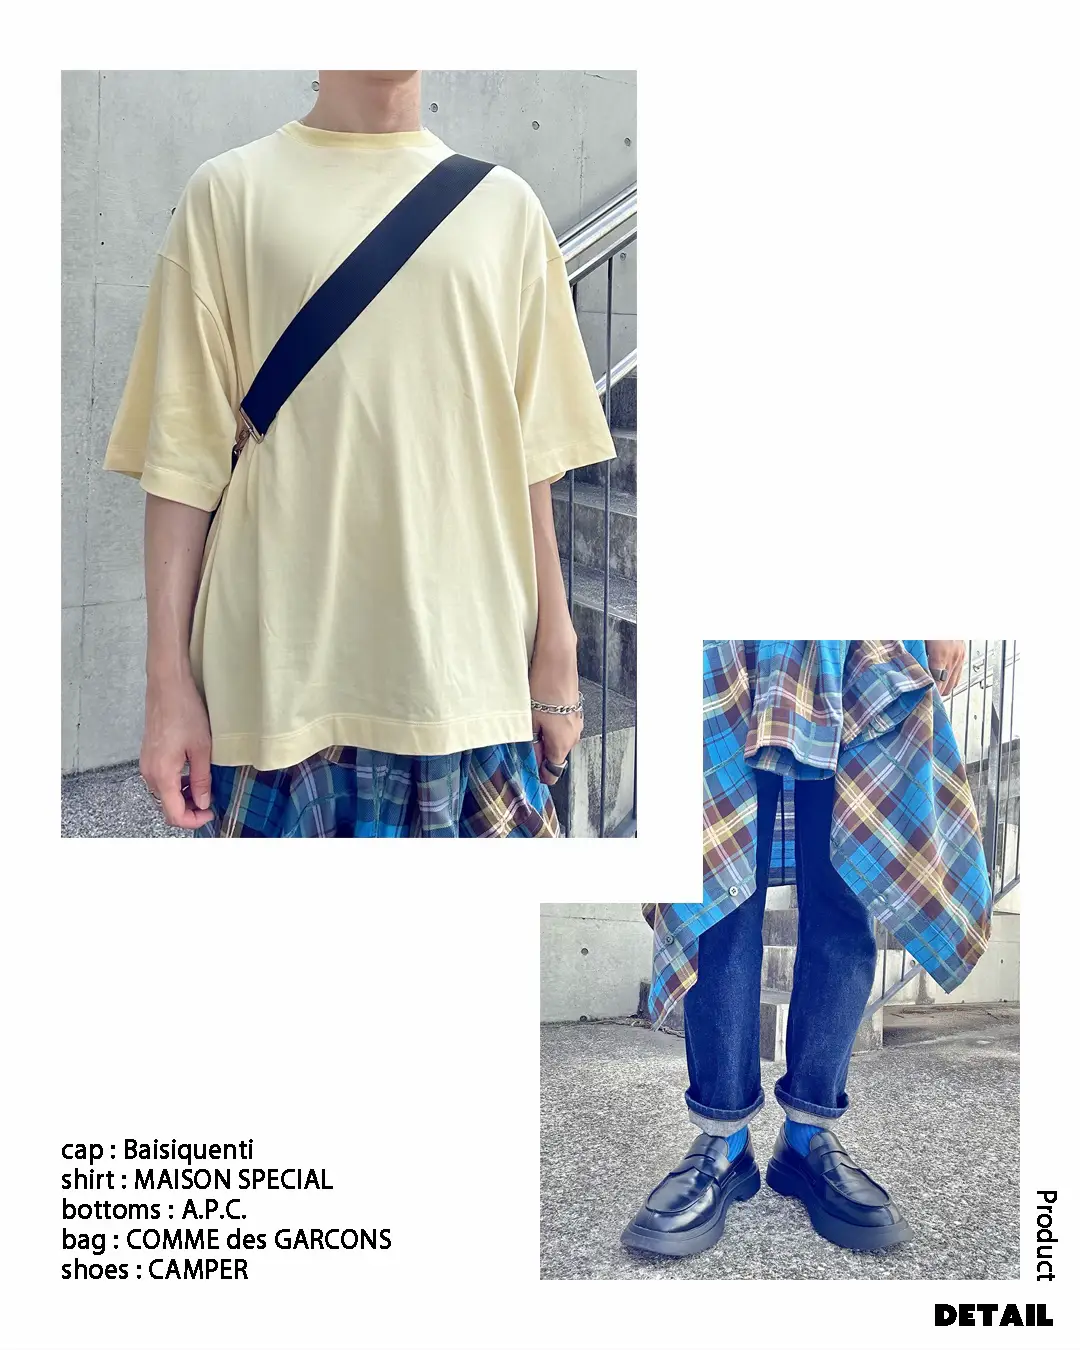 チェックシャツのカラーコーデ | kimamaniが投稿したフォトブック | Lemon8